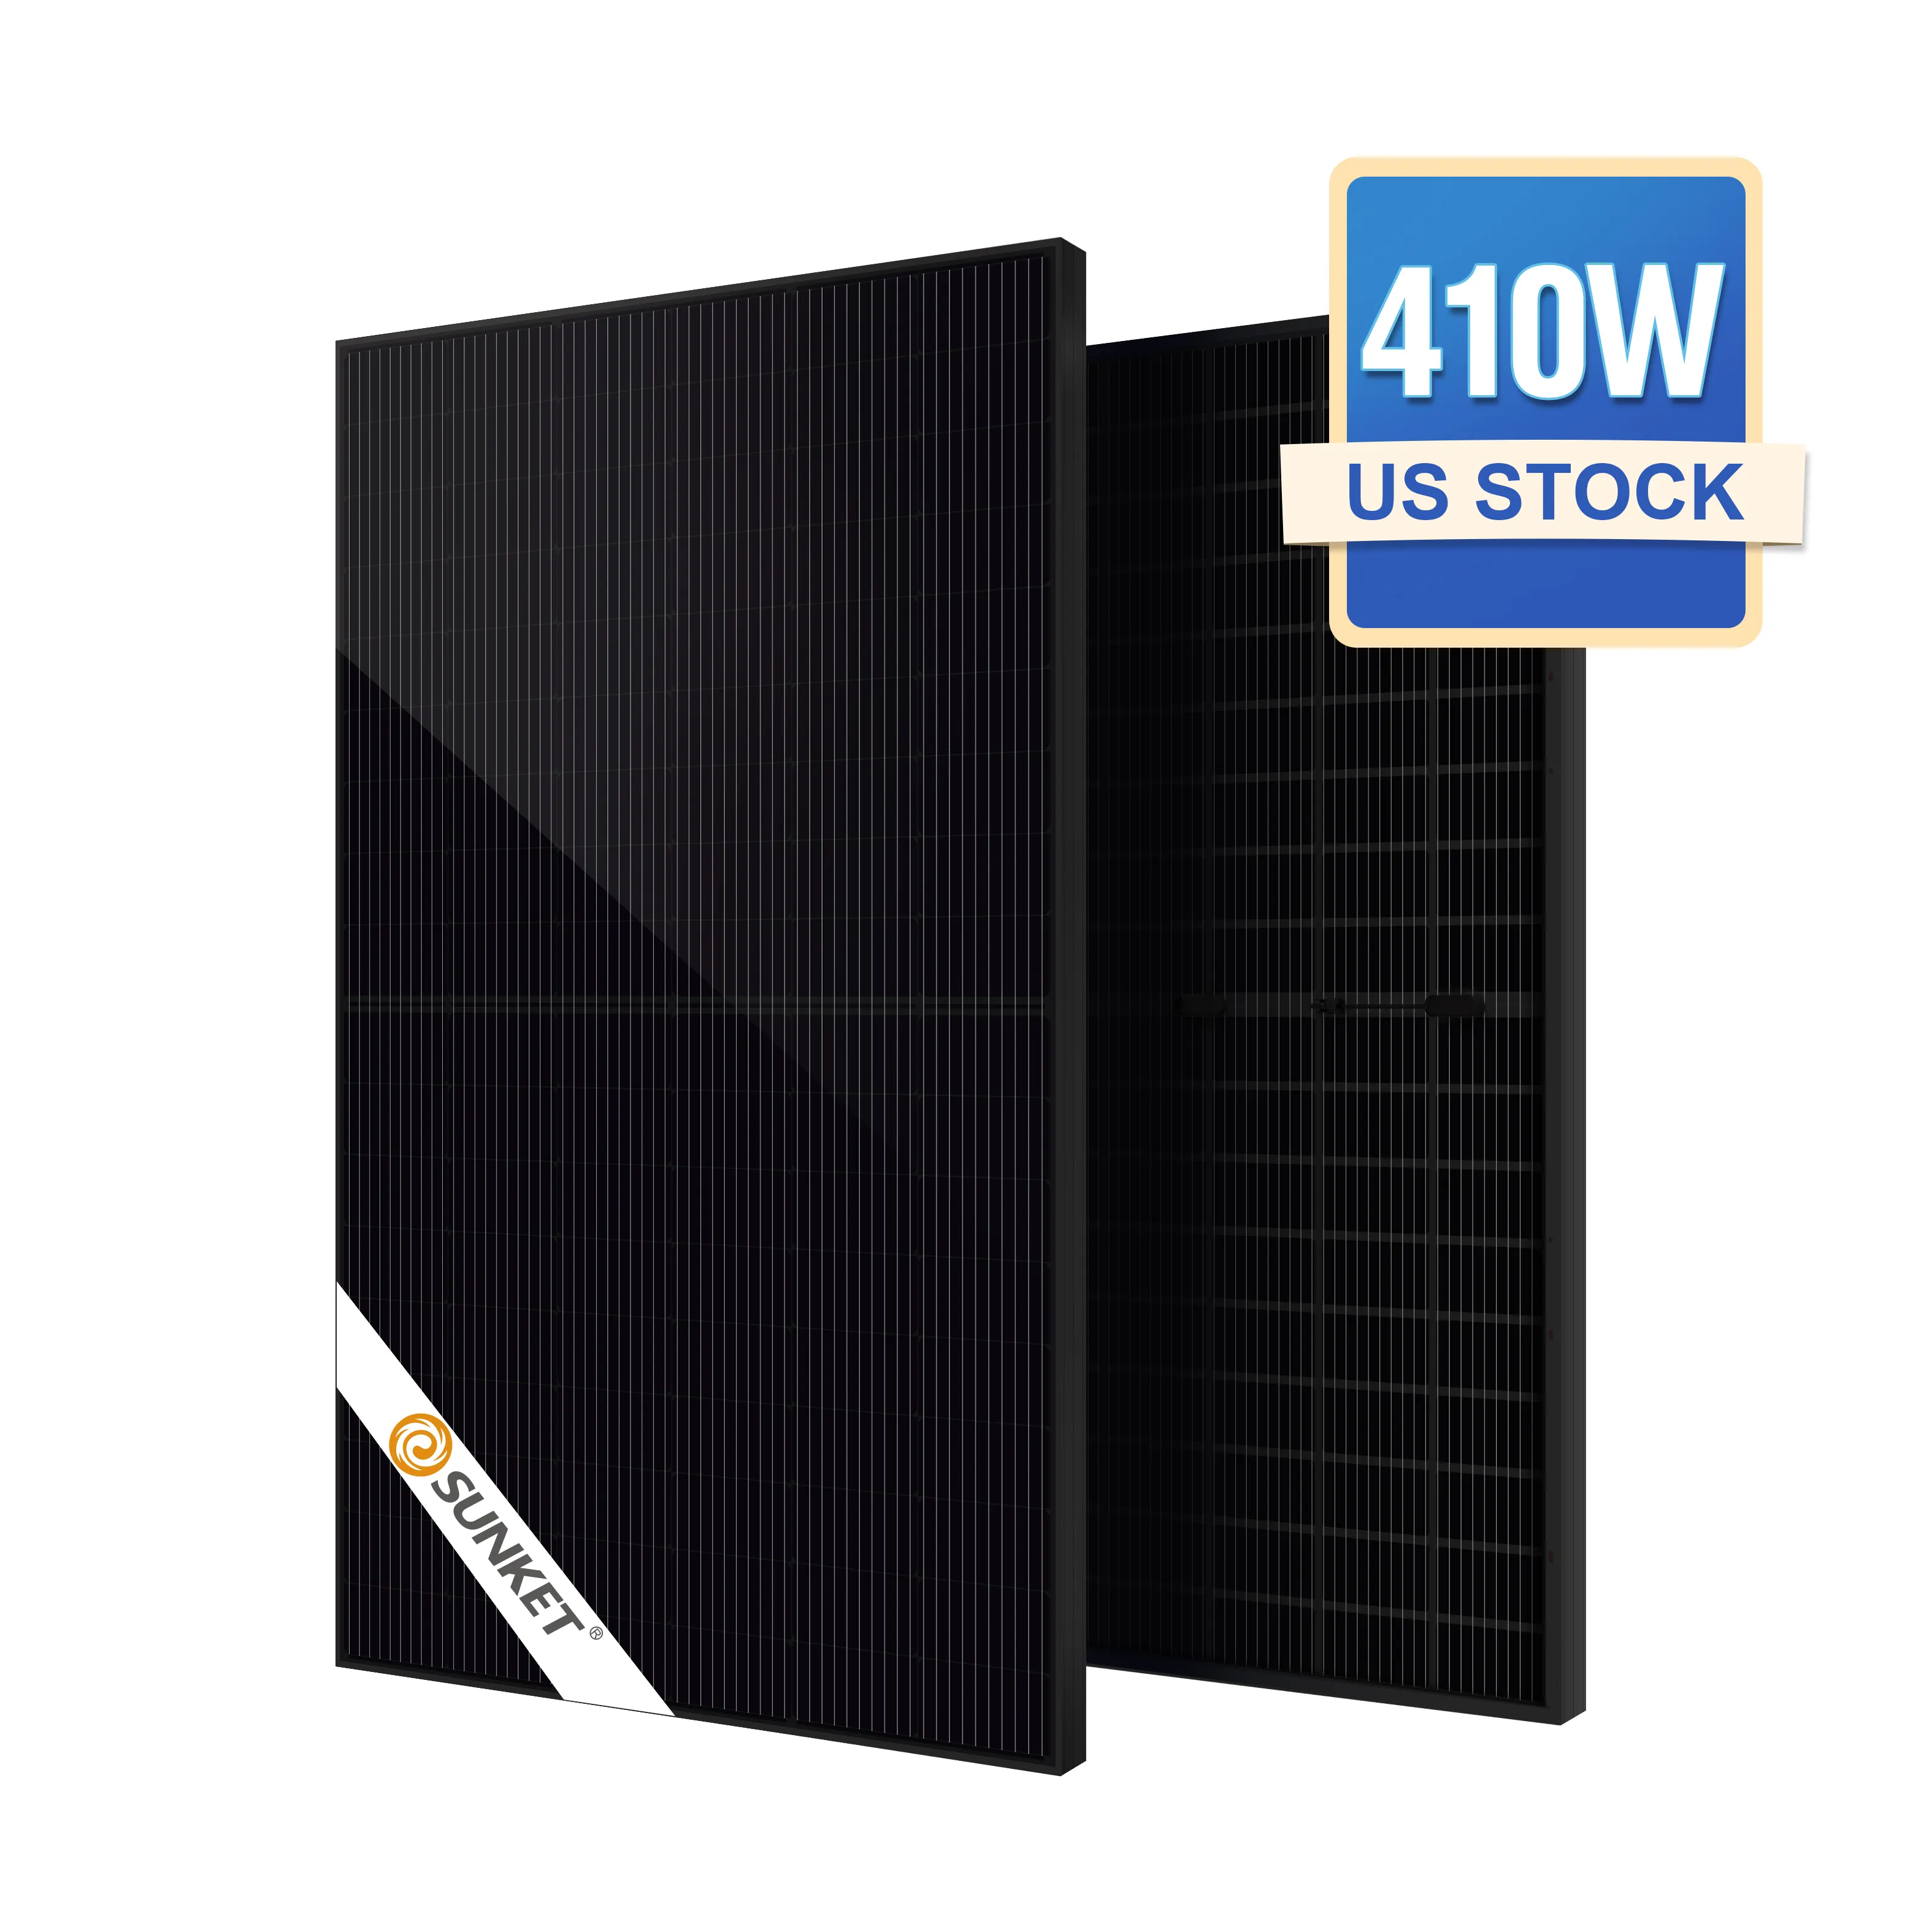 Çin 1Kw 1000 Watt siyah ızgara fotovoltaik güneş paneli sistemi 2Kw fiyat Carport çatı avrupa depo